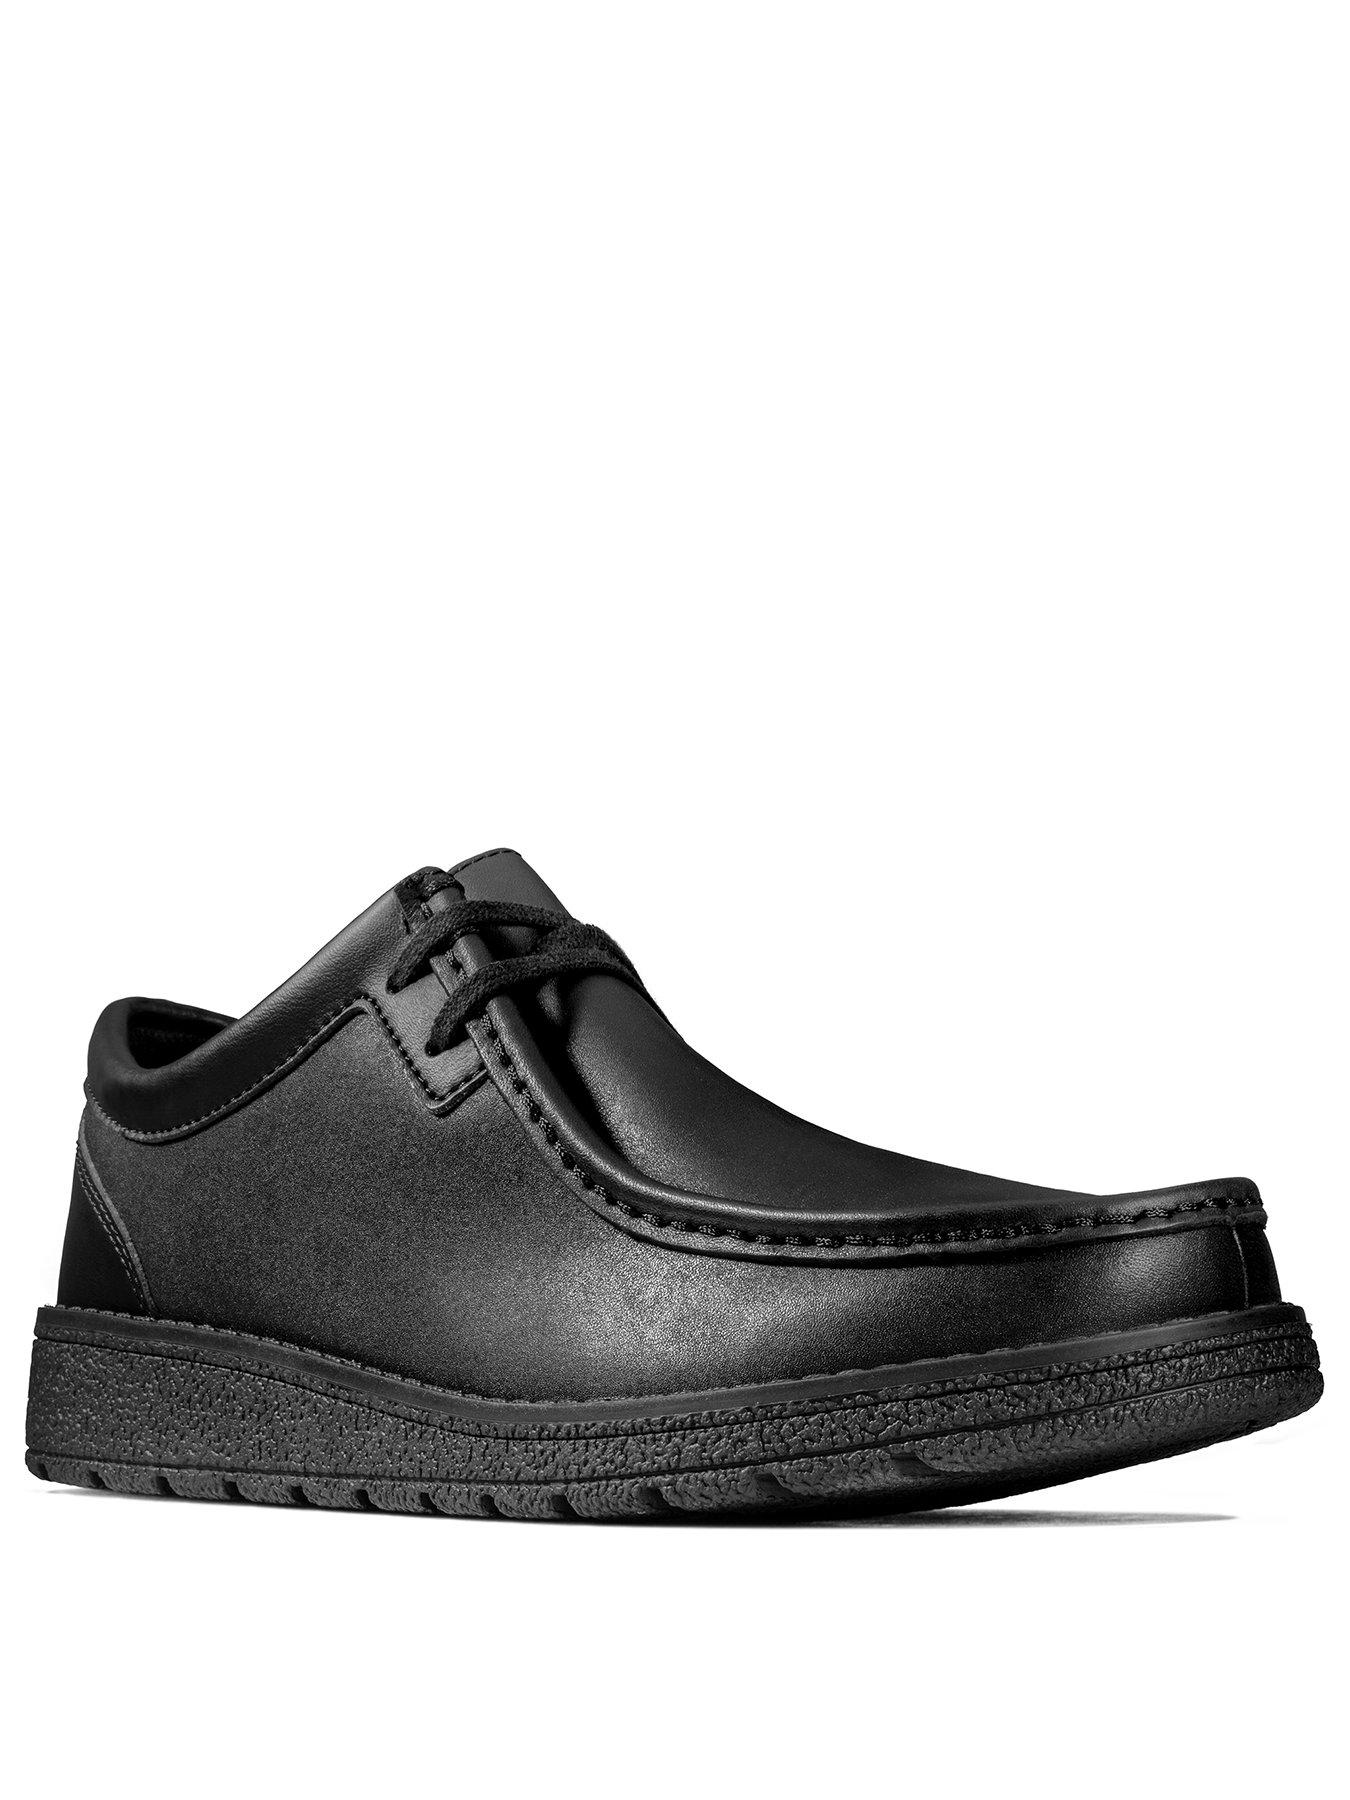 black clarks shoes